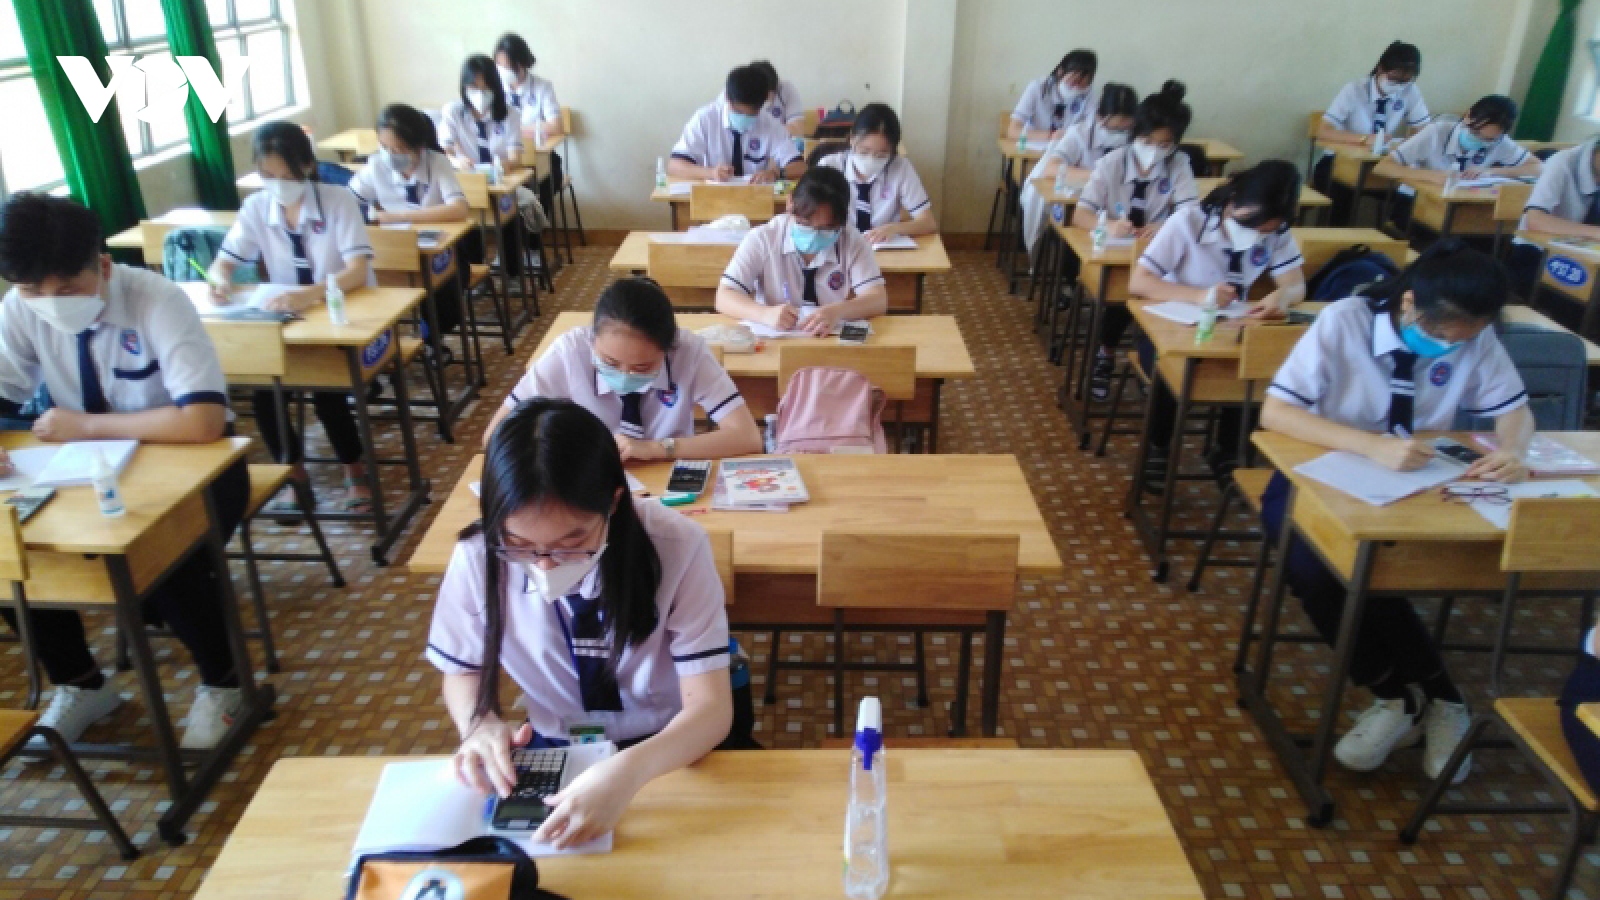 Sau 2 tháng khai giảng, các trường học ở Tiền Giang vẫn chưa thể thu học phí